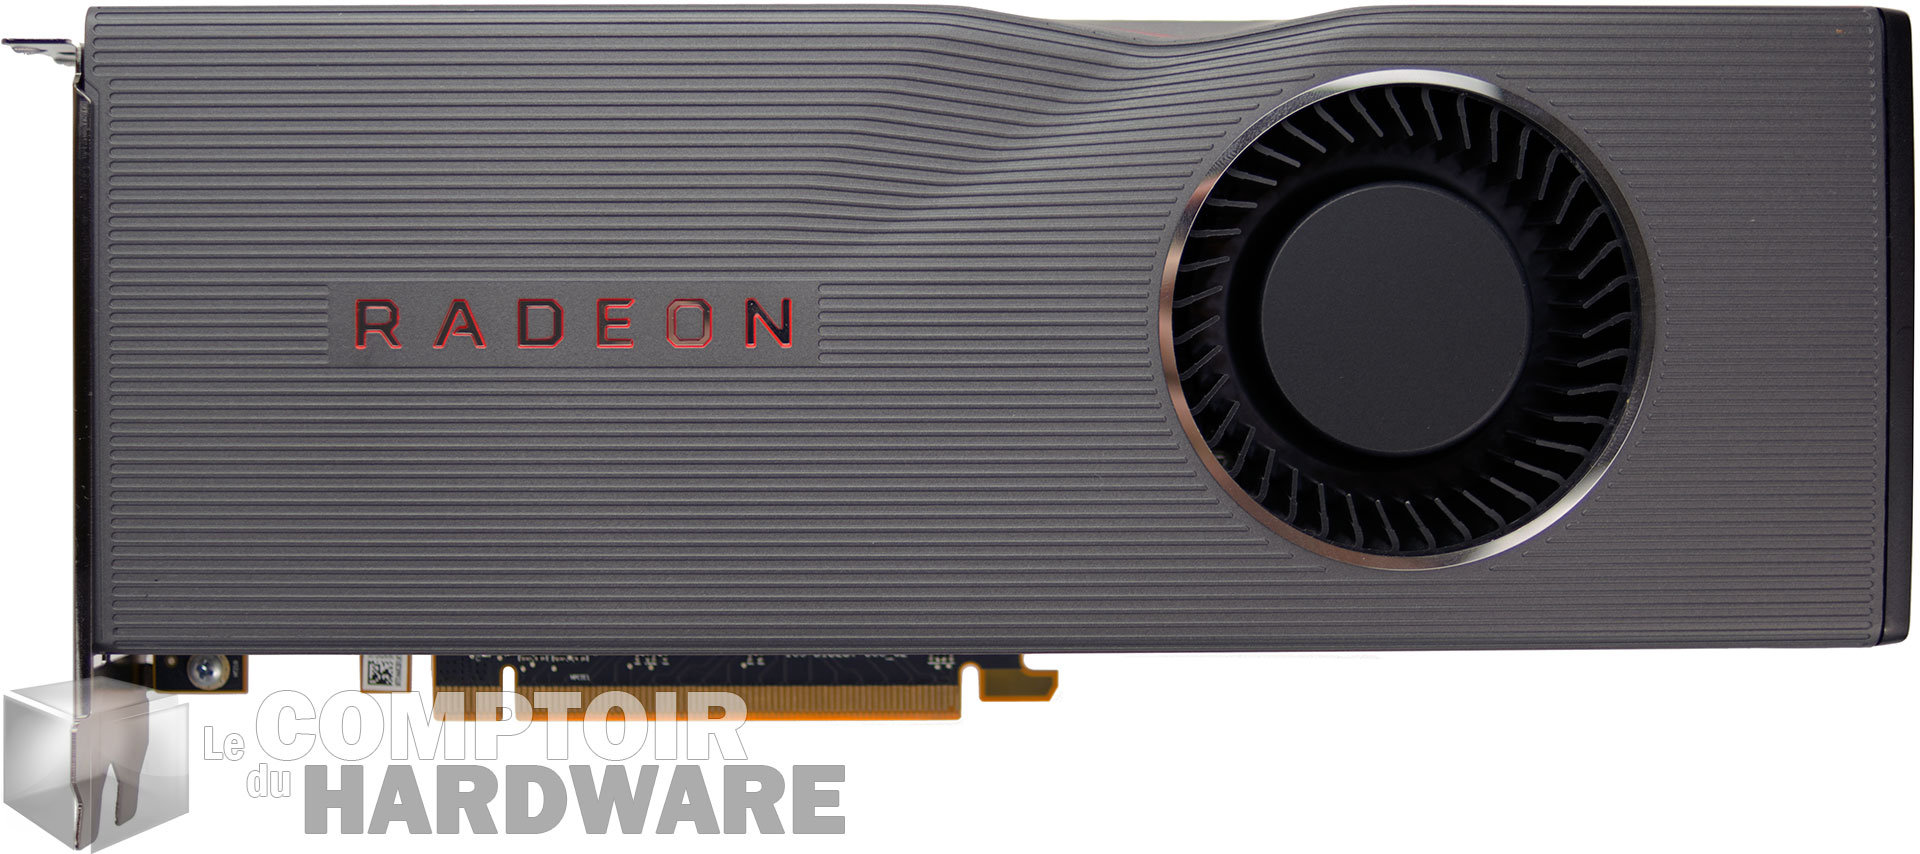 Radeon RX 5700 XT : face avant